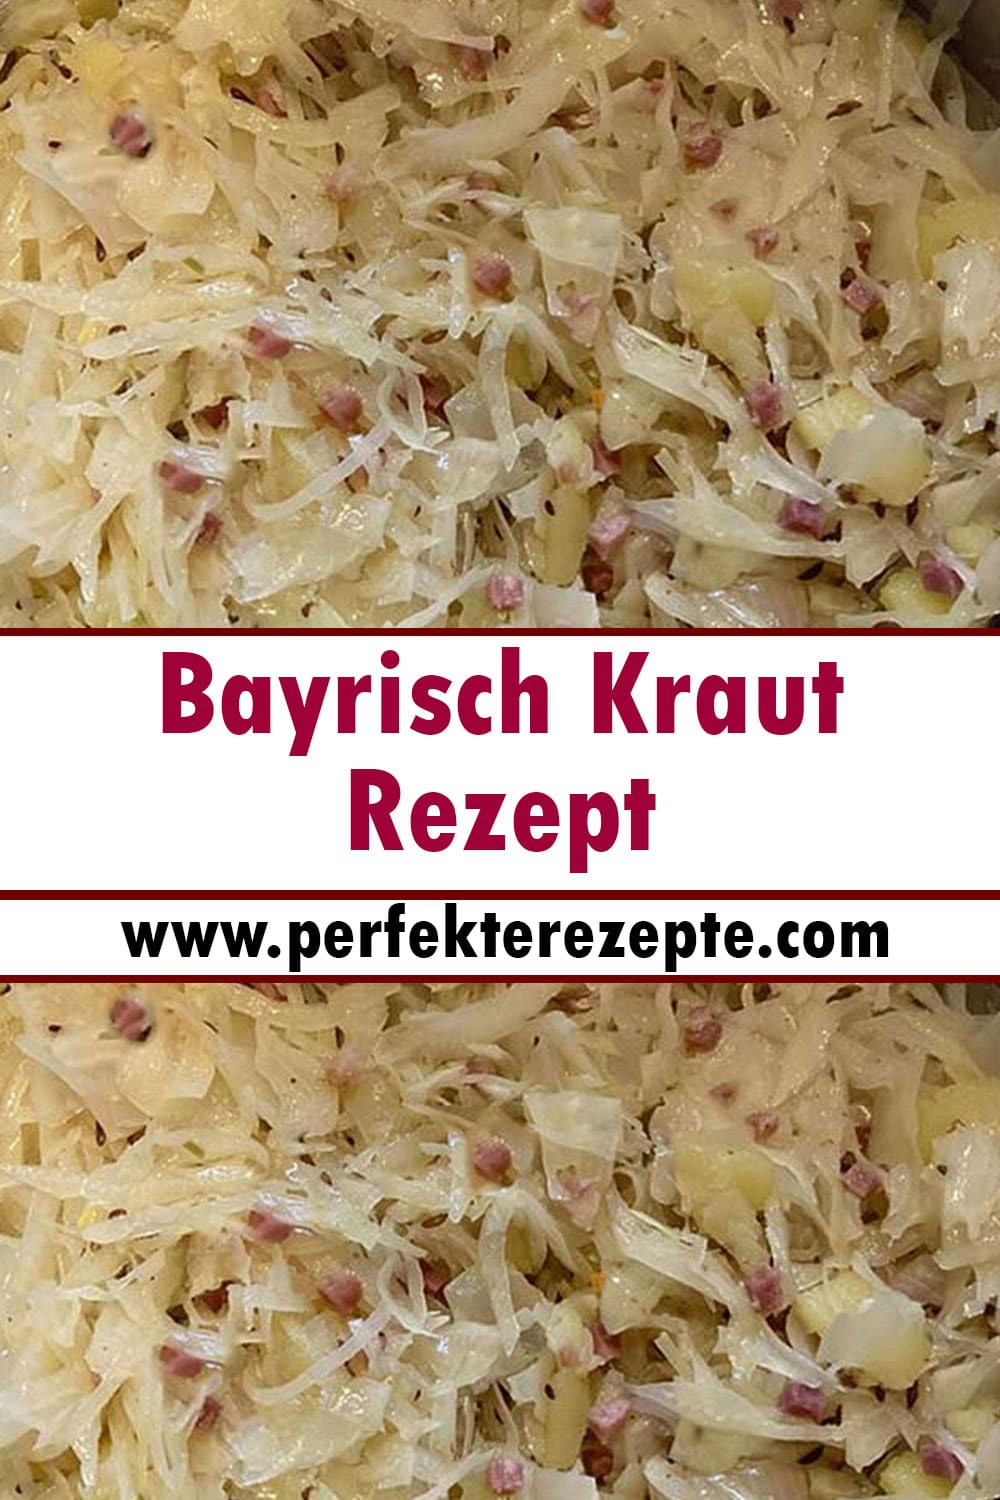 Bayrisch Kraut Rezept